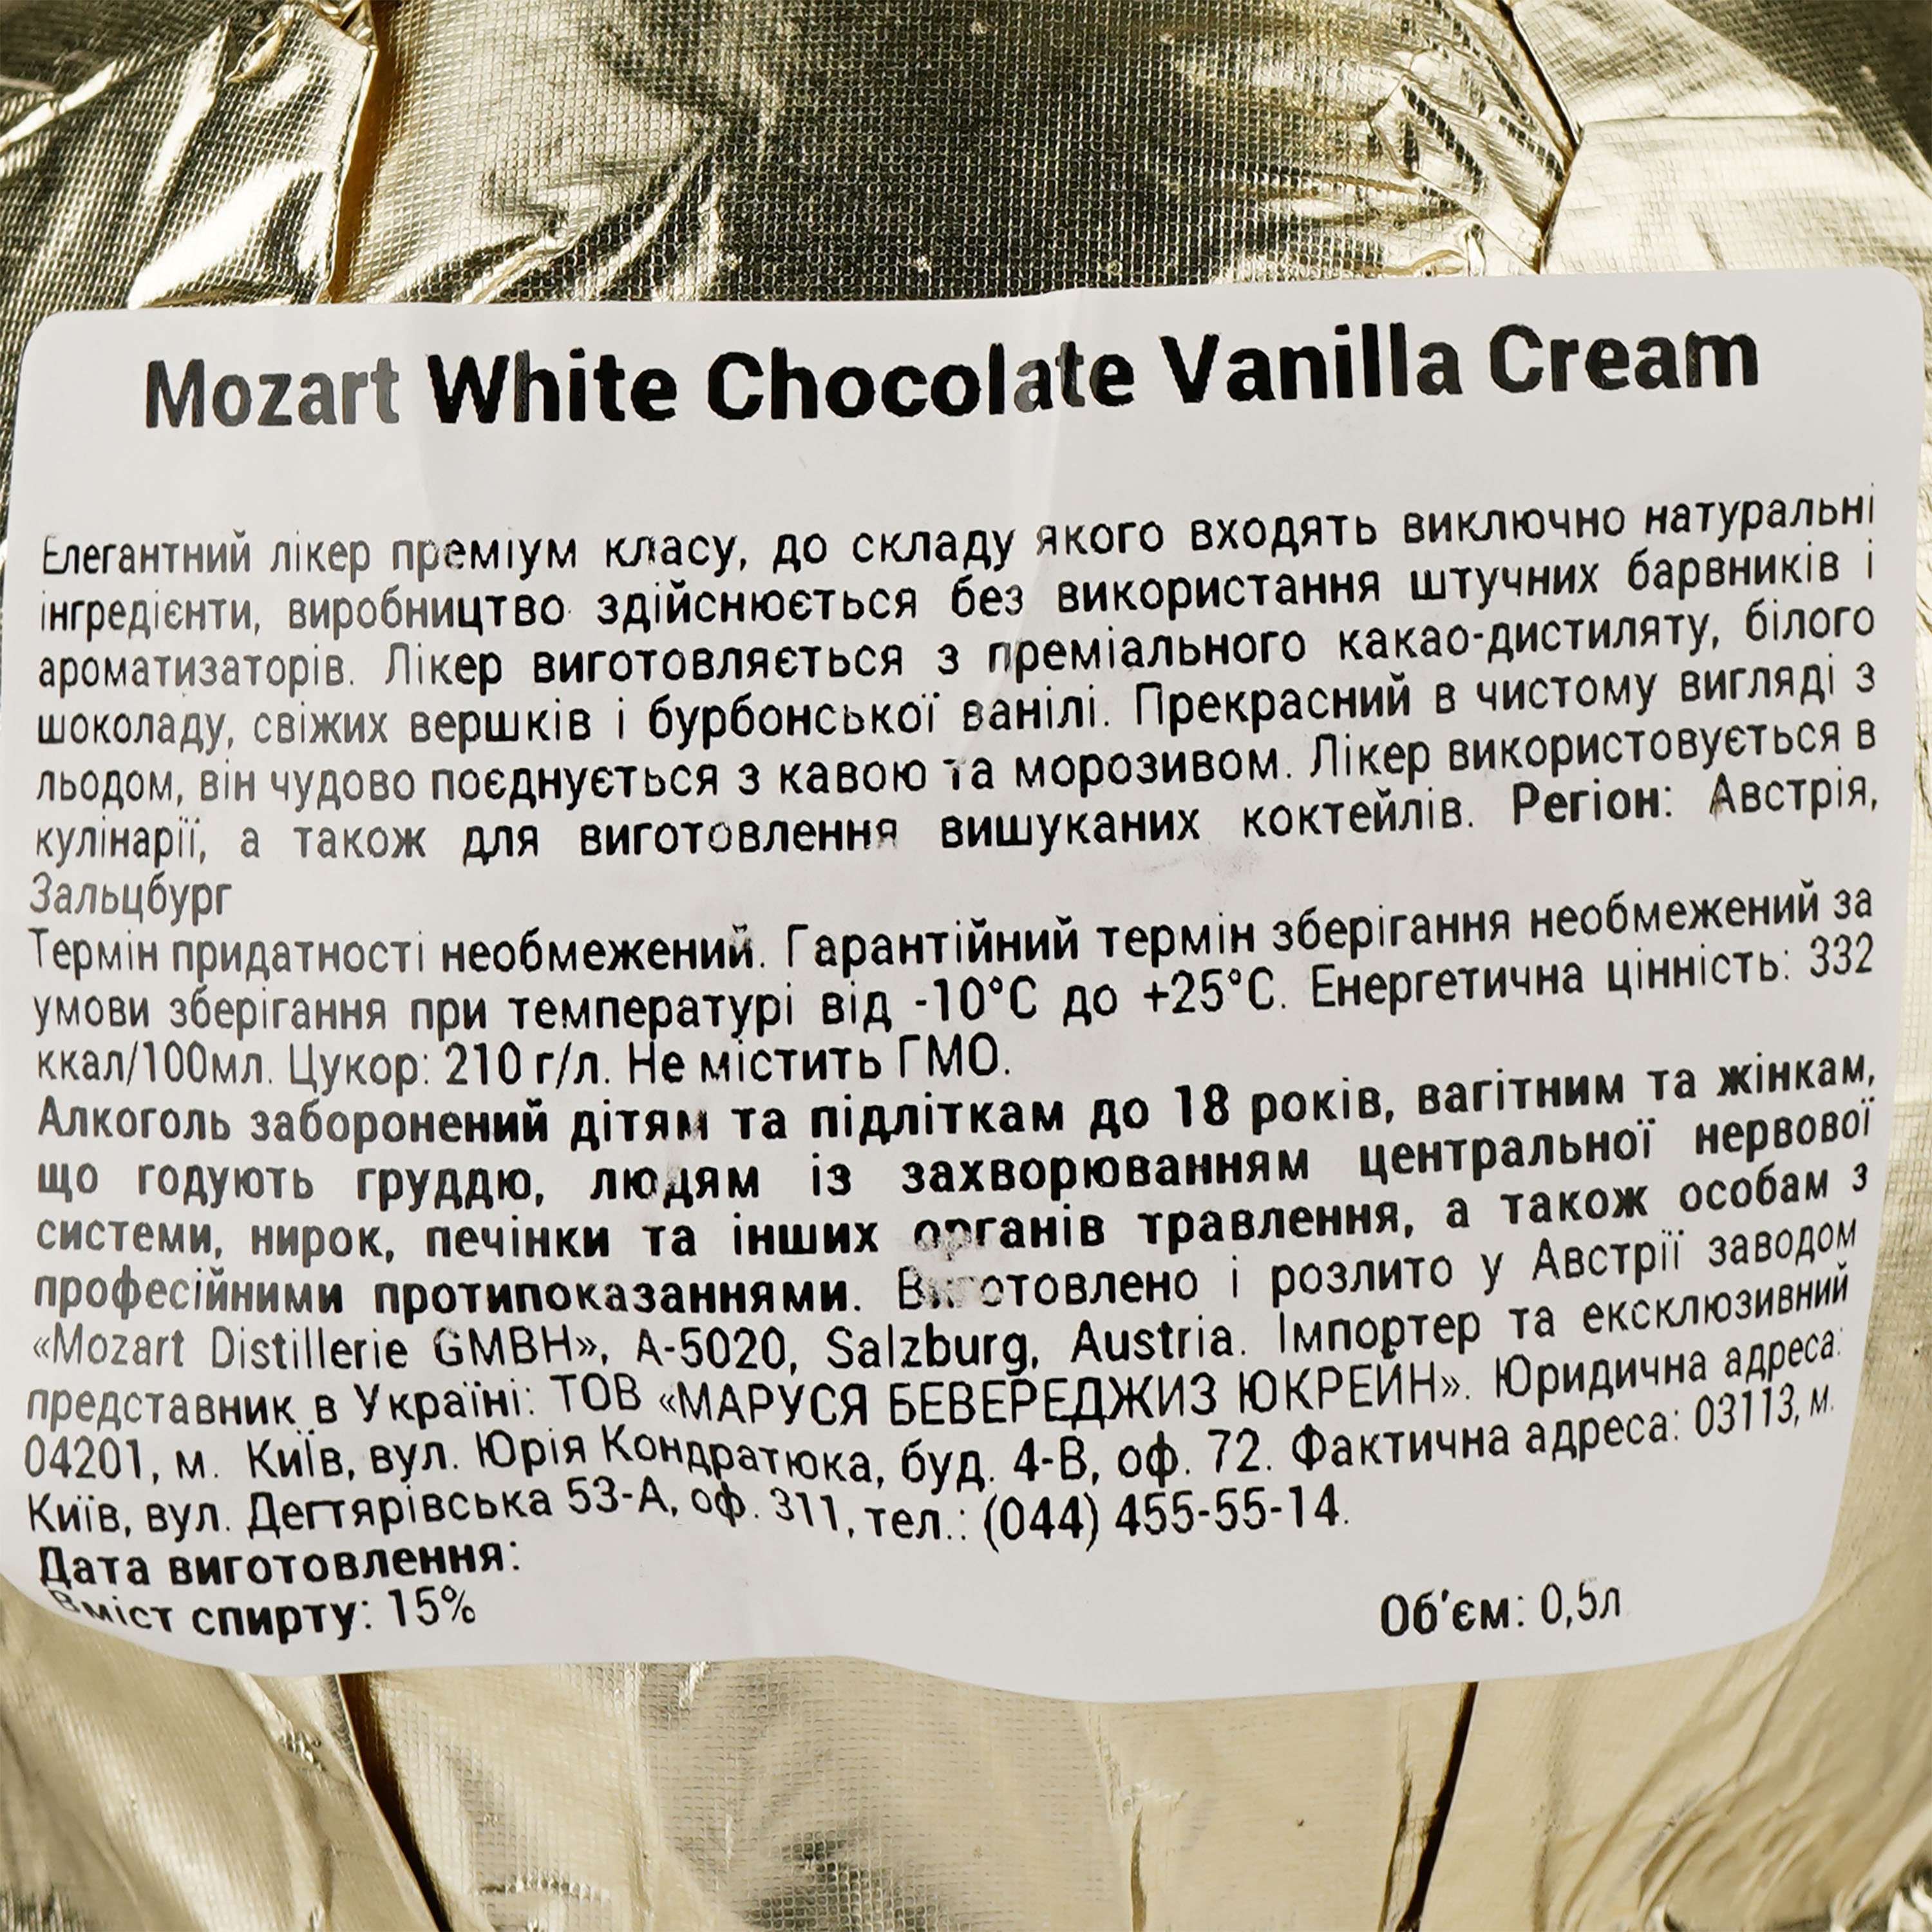 Ликер Mozart White Chocolate Vanilla Cream, 15%, 0,5 л - фото 3